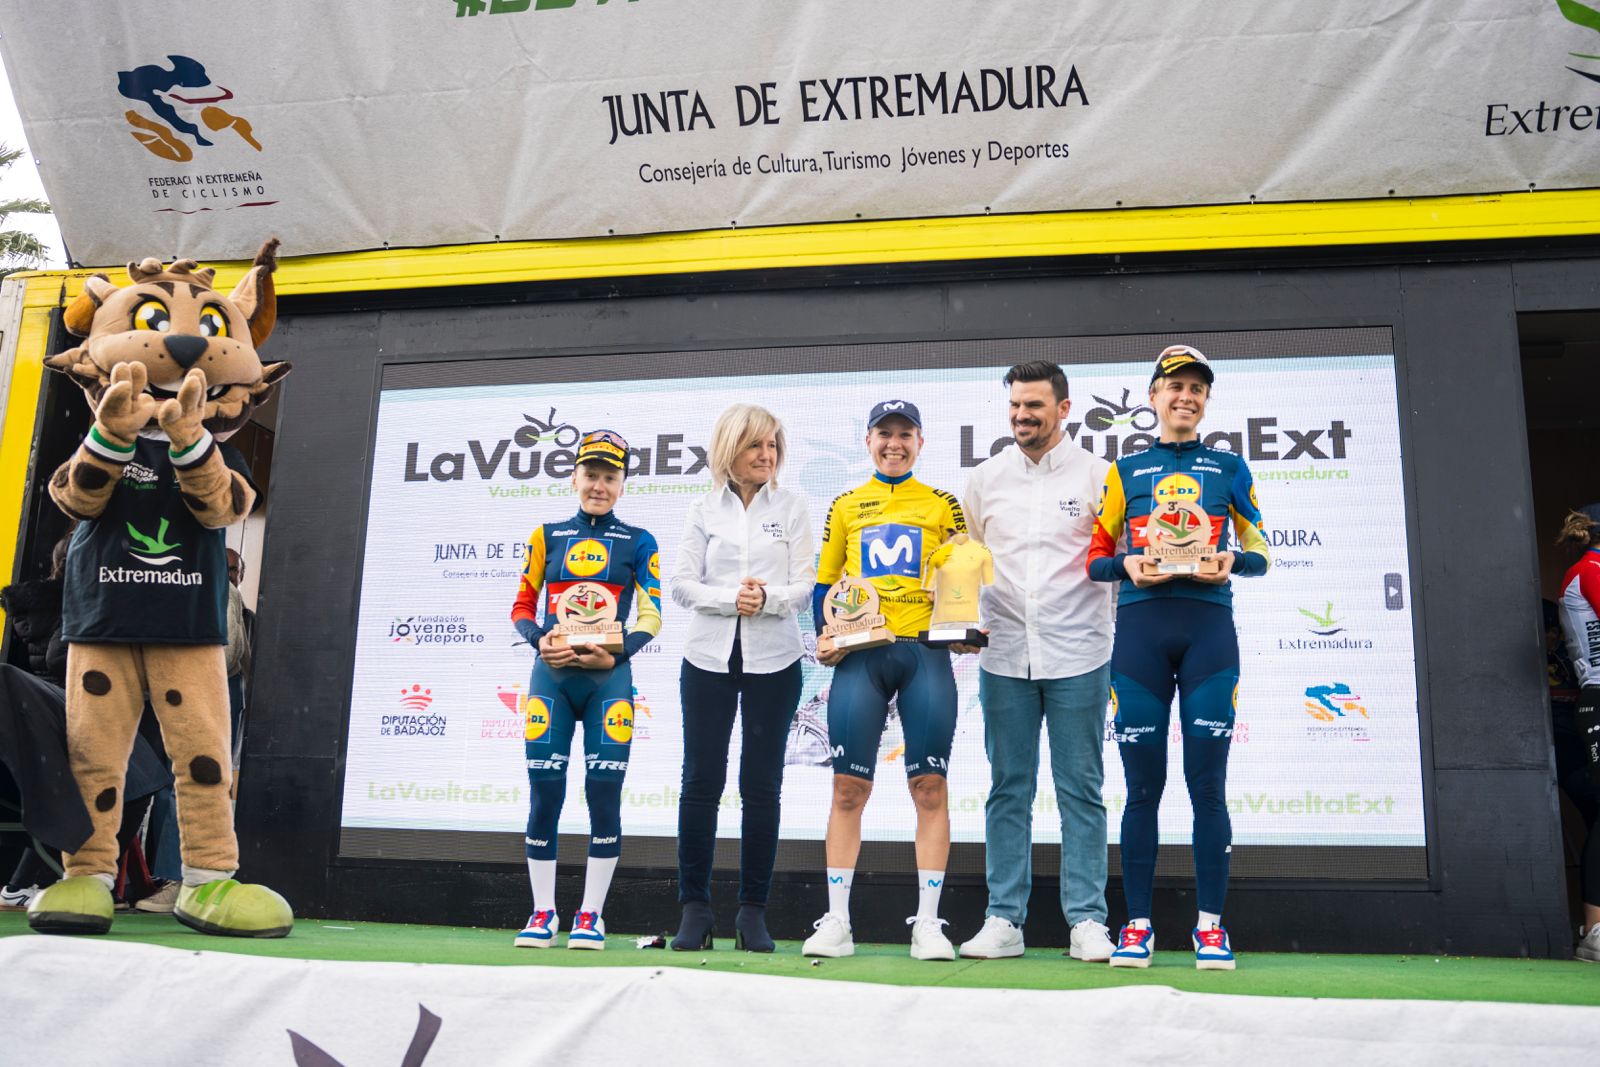 Image 5 of article La holandesa Mareille Meijering gana la Vuelta Ciclista a Extremadura femenina tras tres días de competición